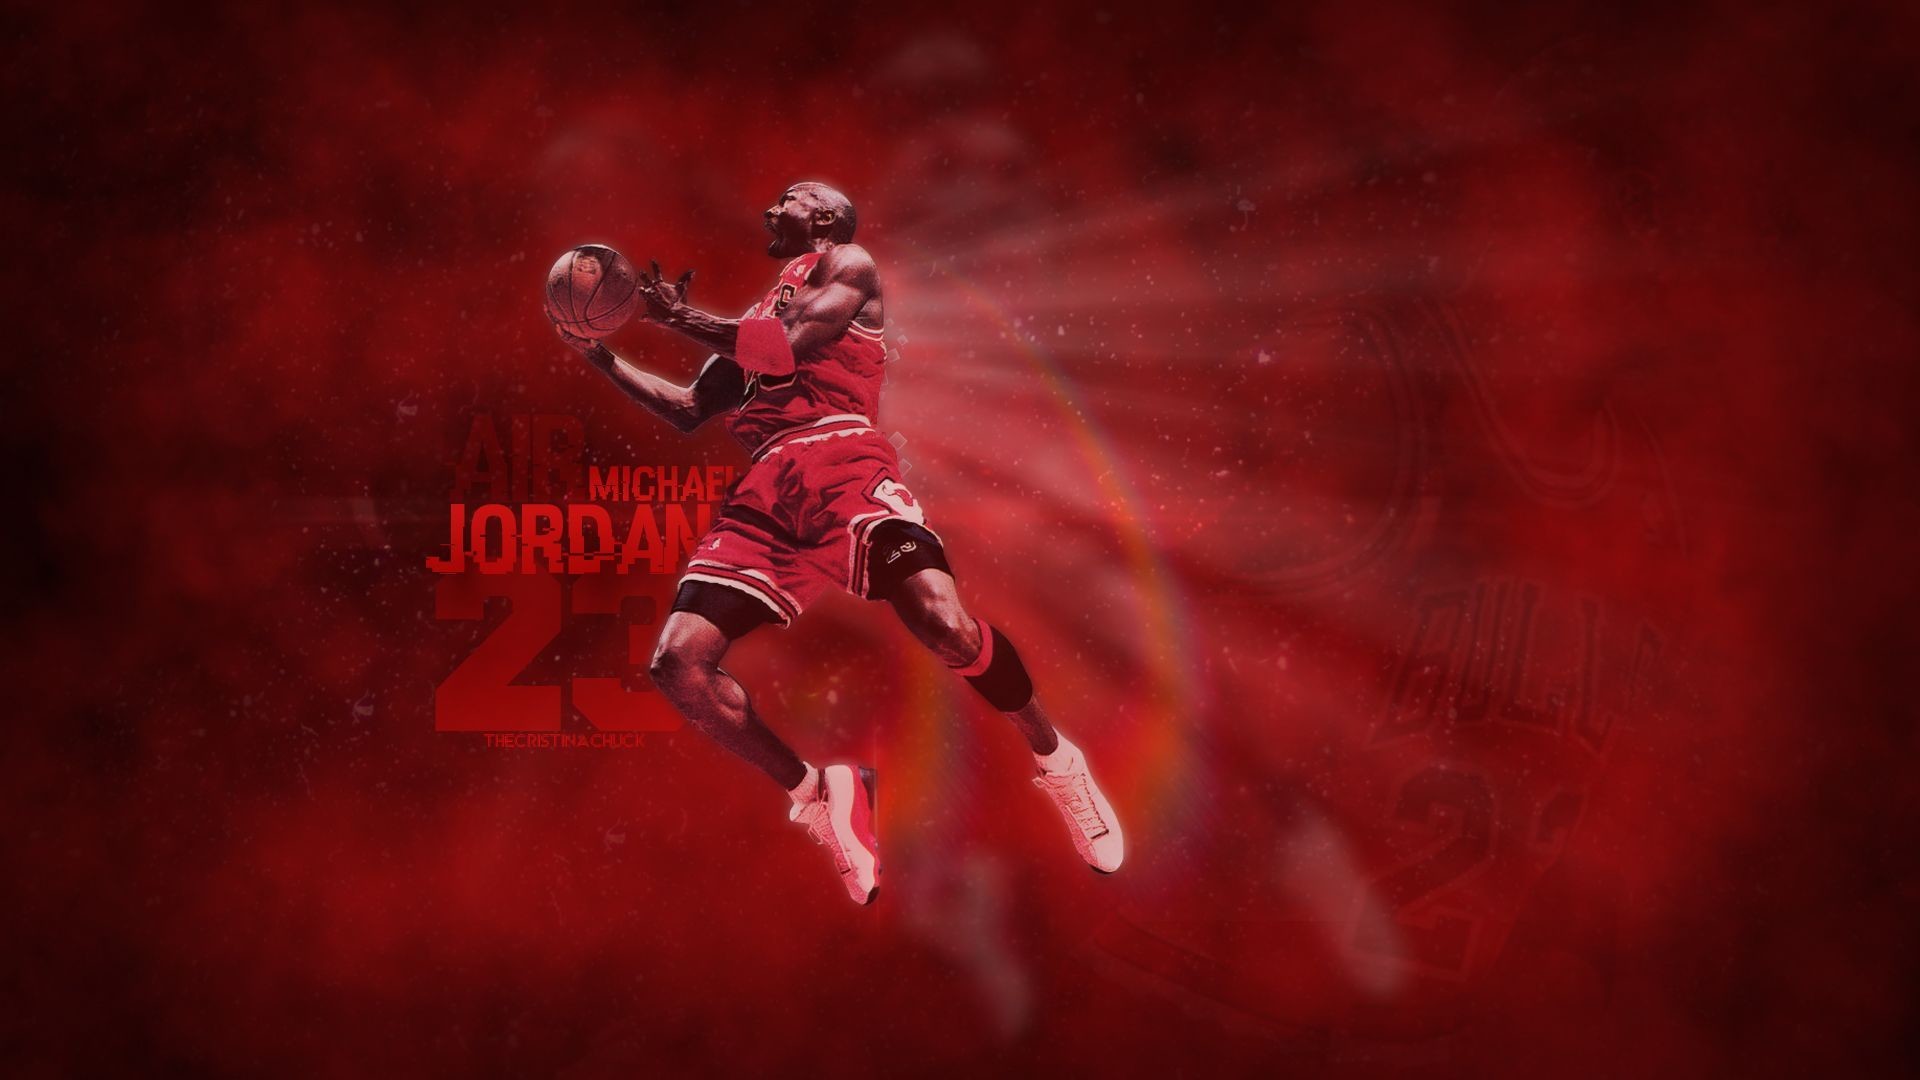 Michael Jordan Logo Wallpaper Image